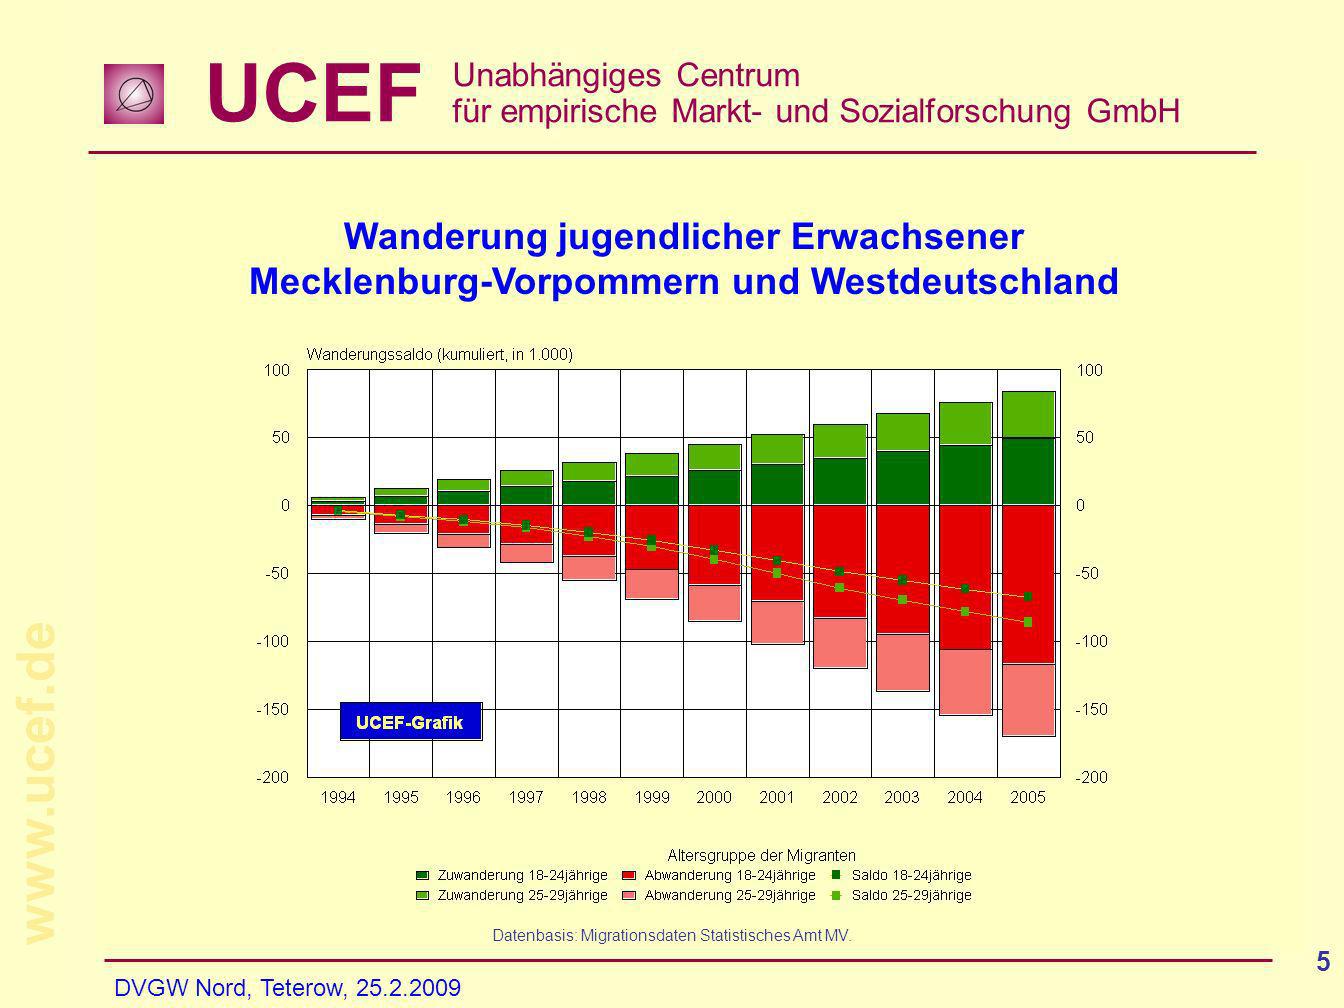 UCEF Unabhängiges Centrum für empirische Markt- und Sozialforschung GmbH   DVGW Nord, Teterow, Veralterung ist nicht gleich Veralterung....